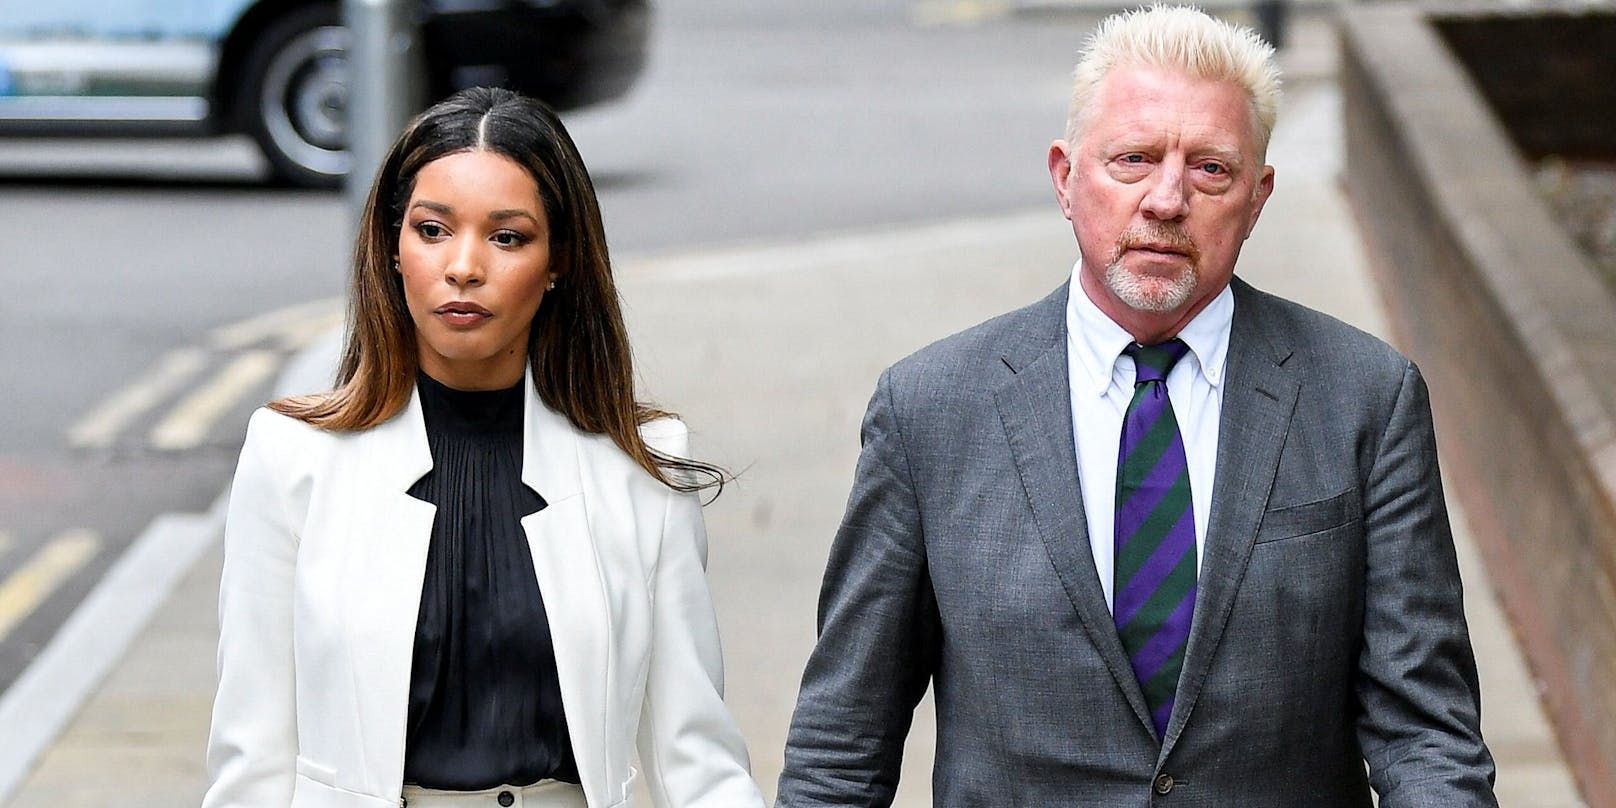 Boris Becker mit seiner Partnerin Lilian auf dem Weg ins Gericht.